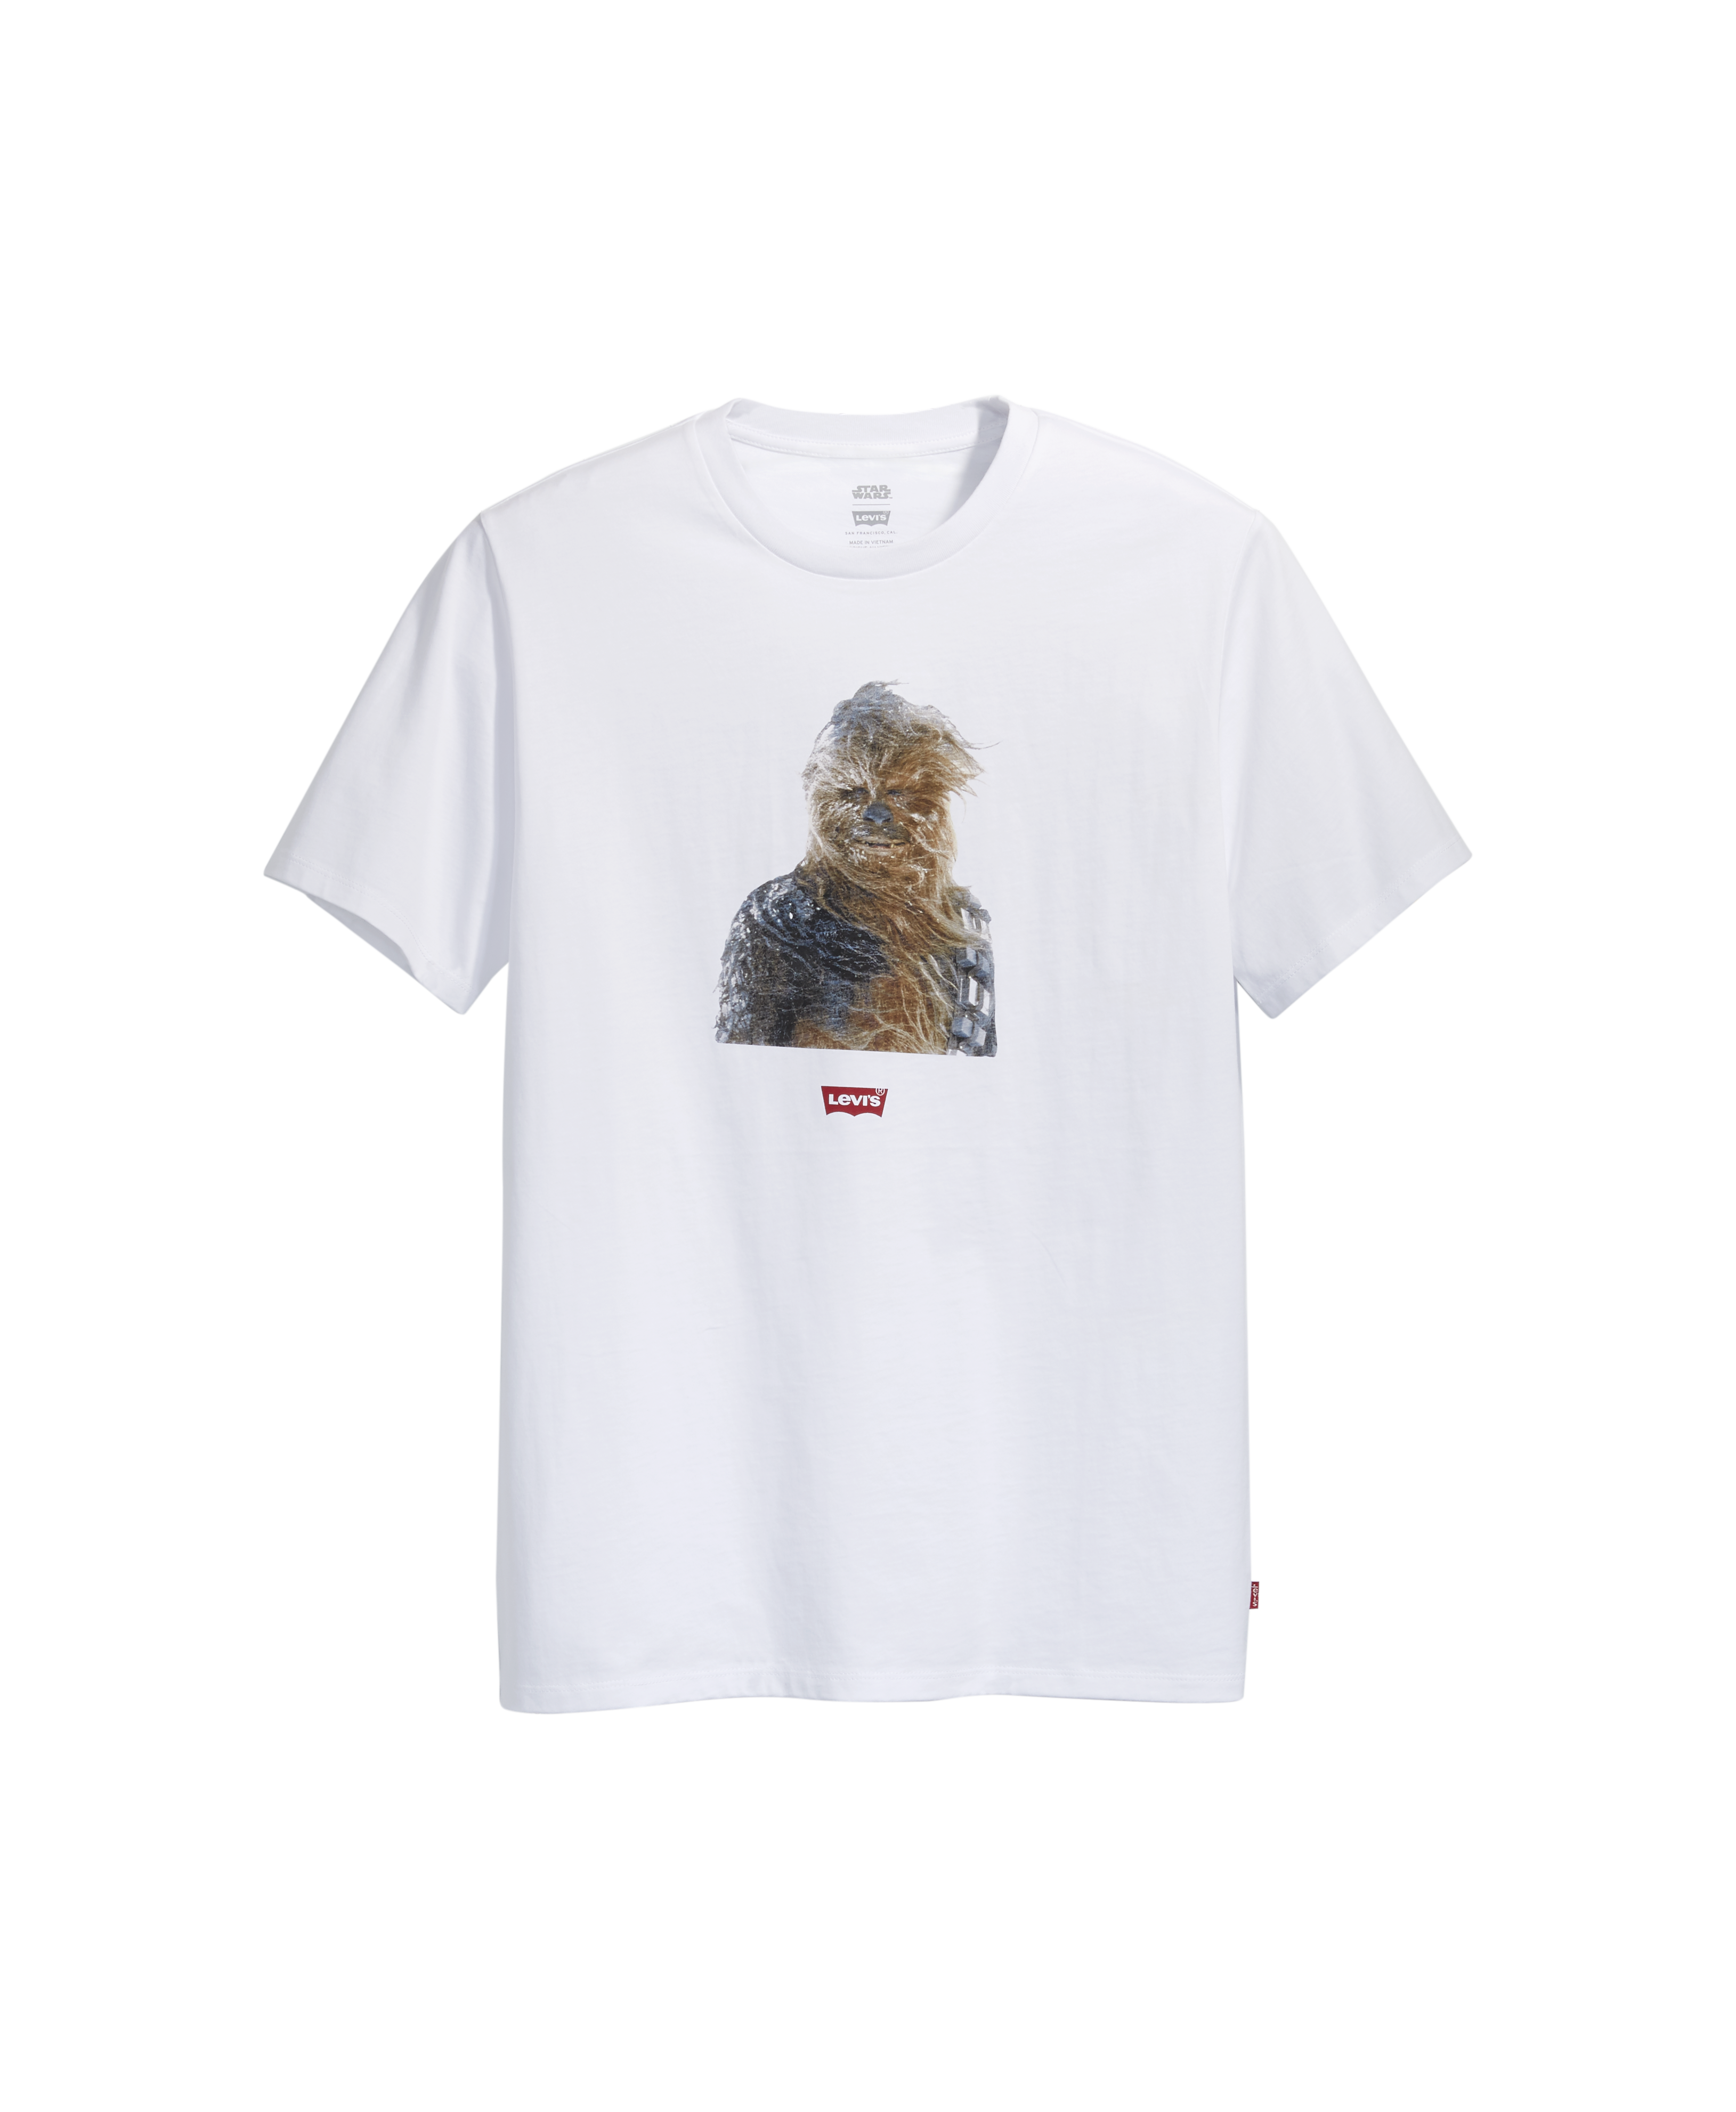 Camiseta da Levi's com Chewbacca (Foto: Divulgação)